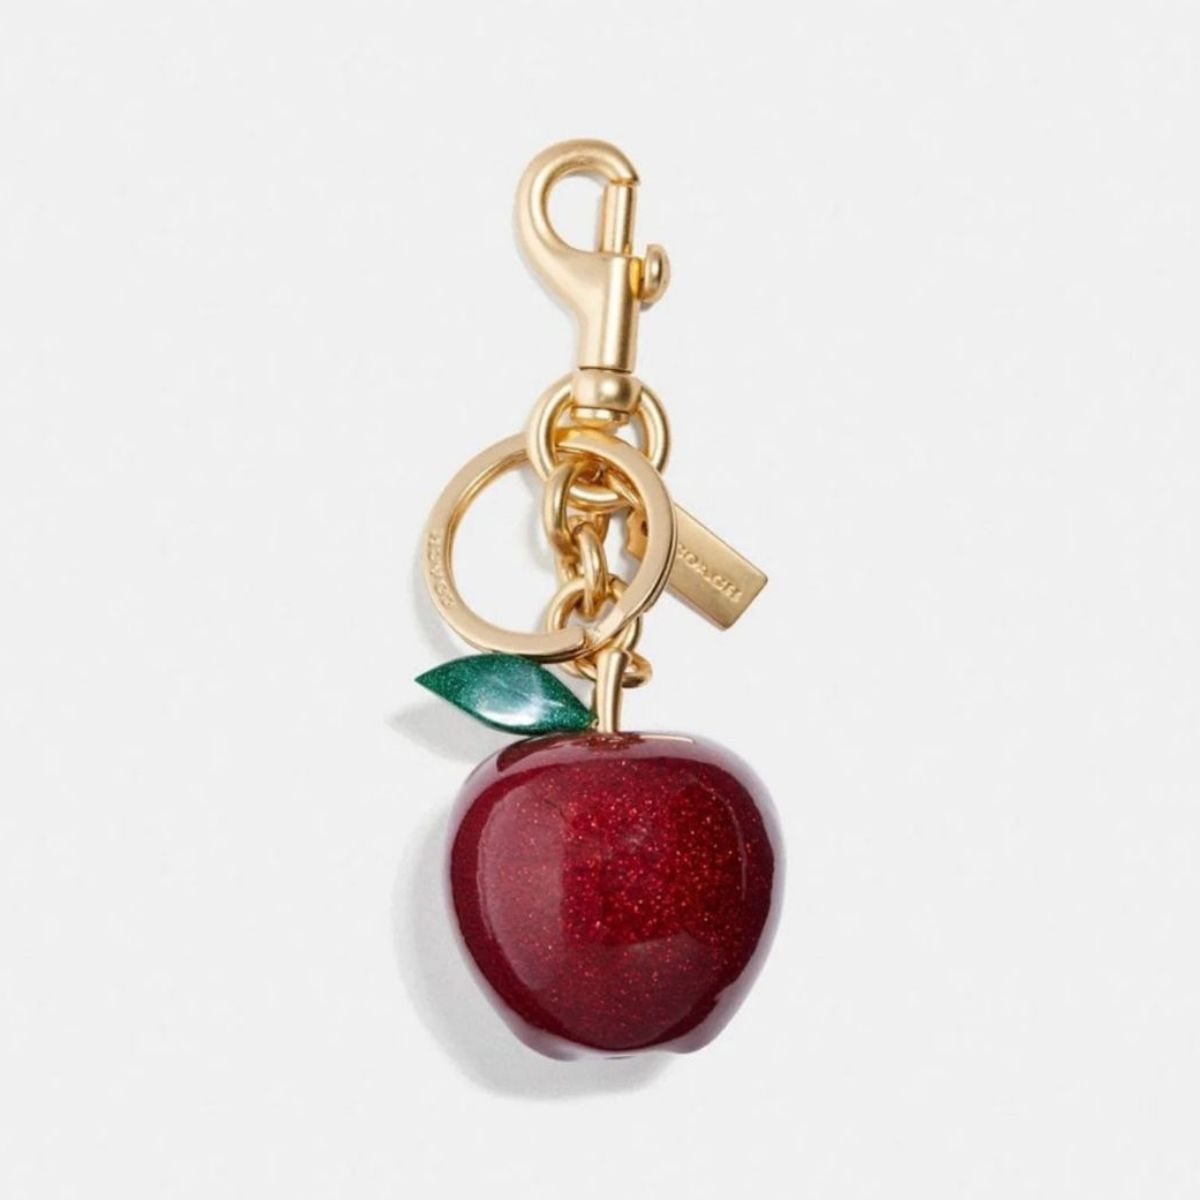 Apple Bag Charm - Seven Season